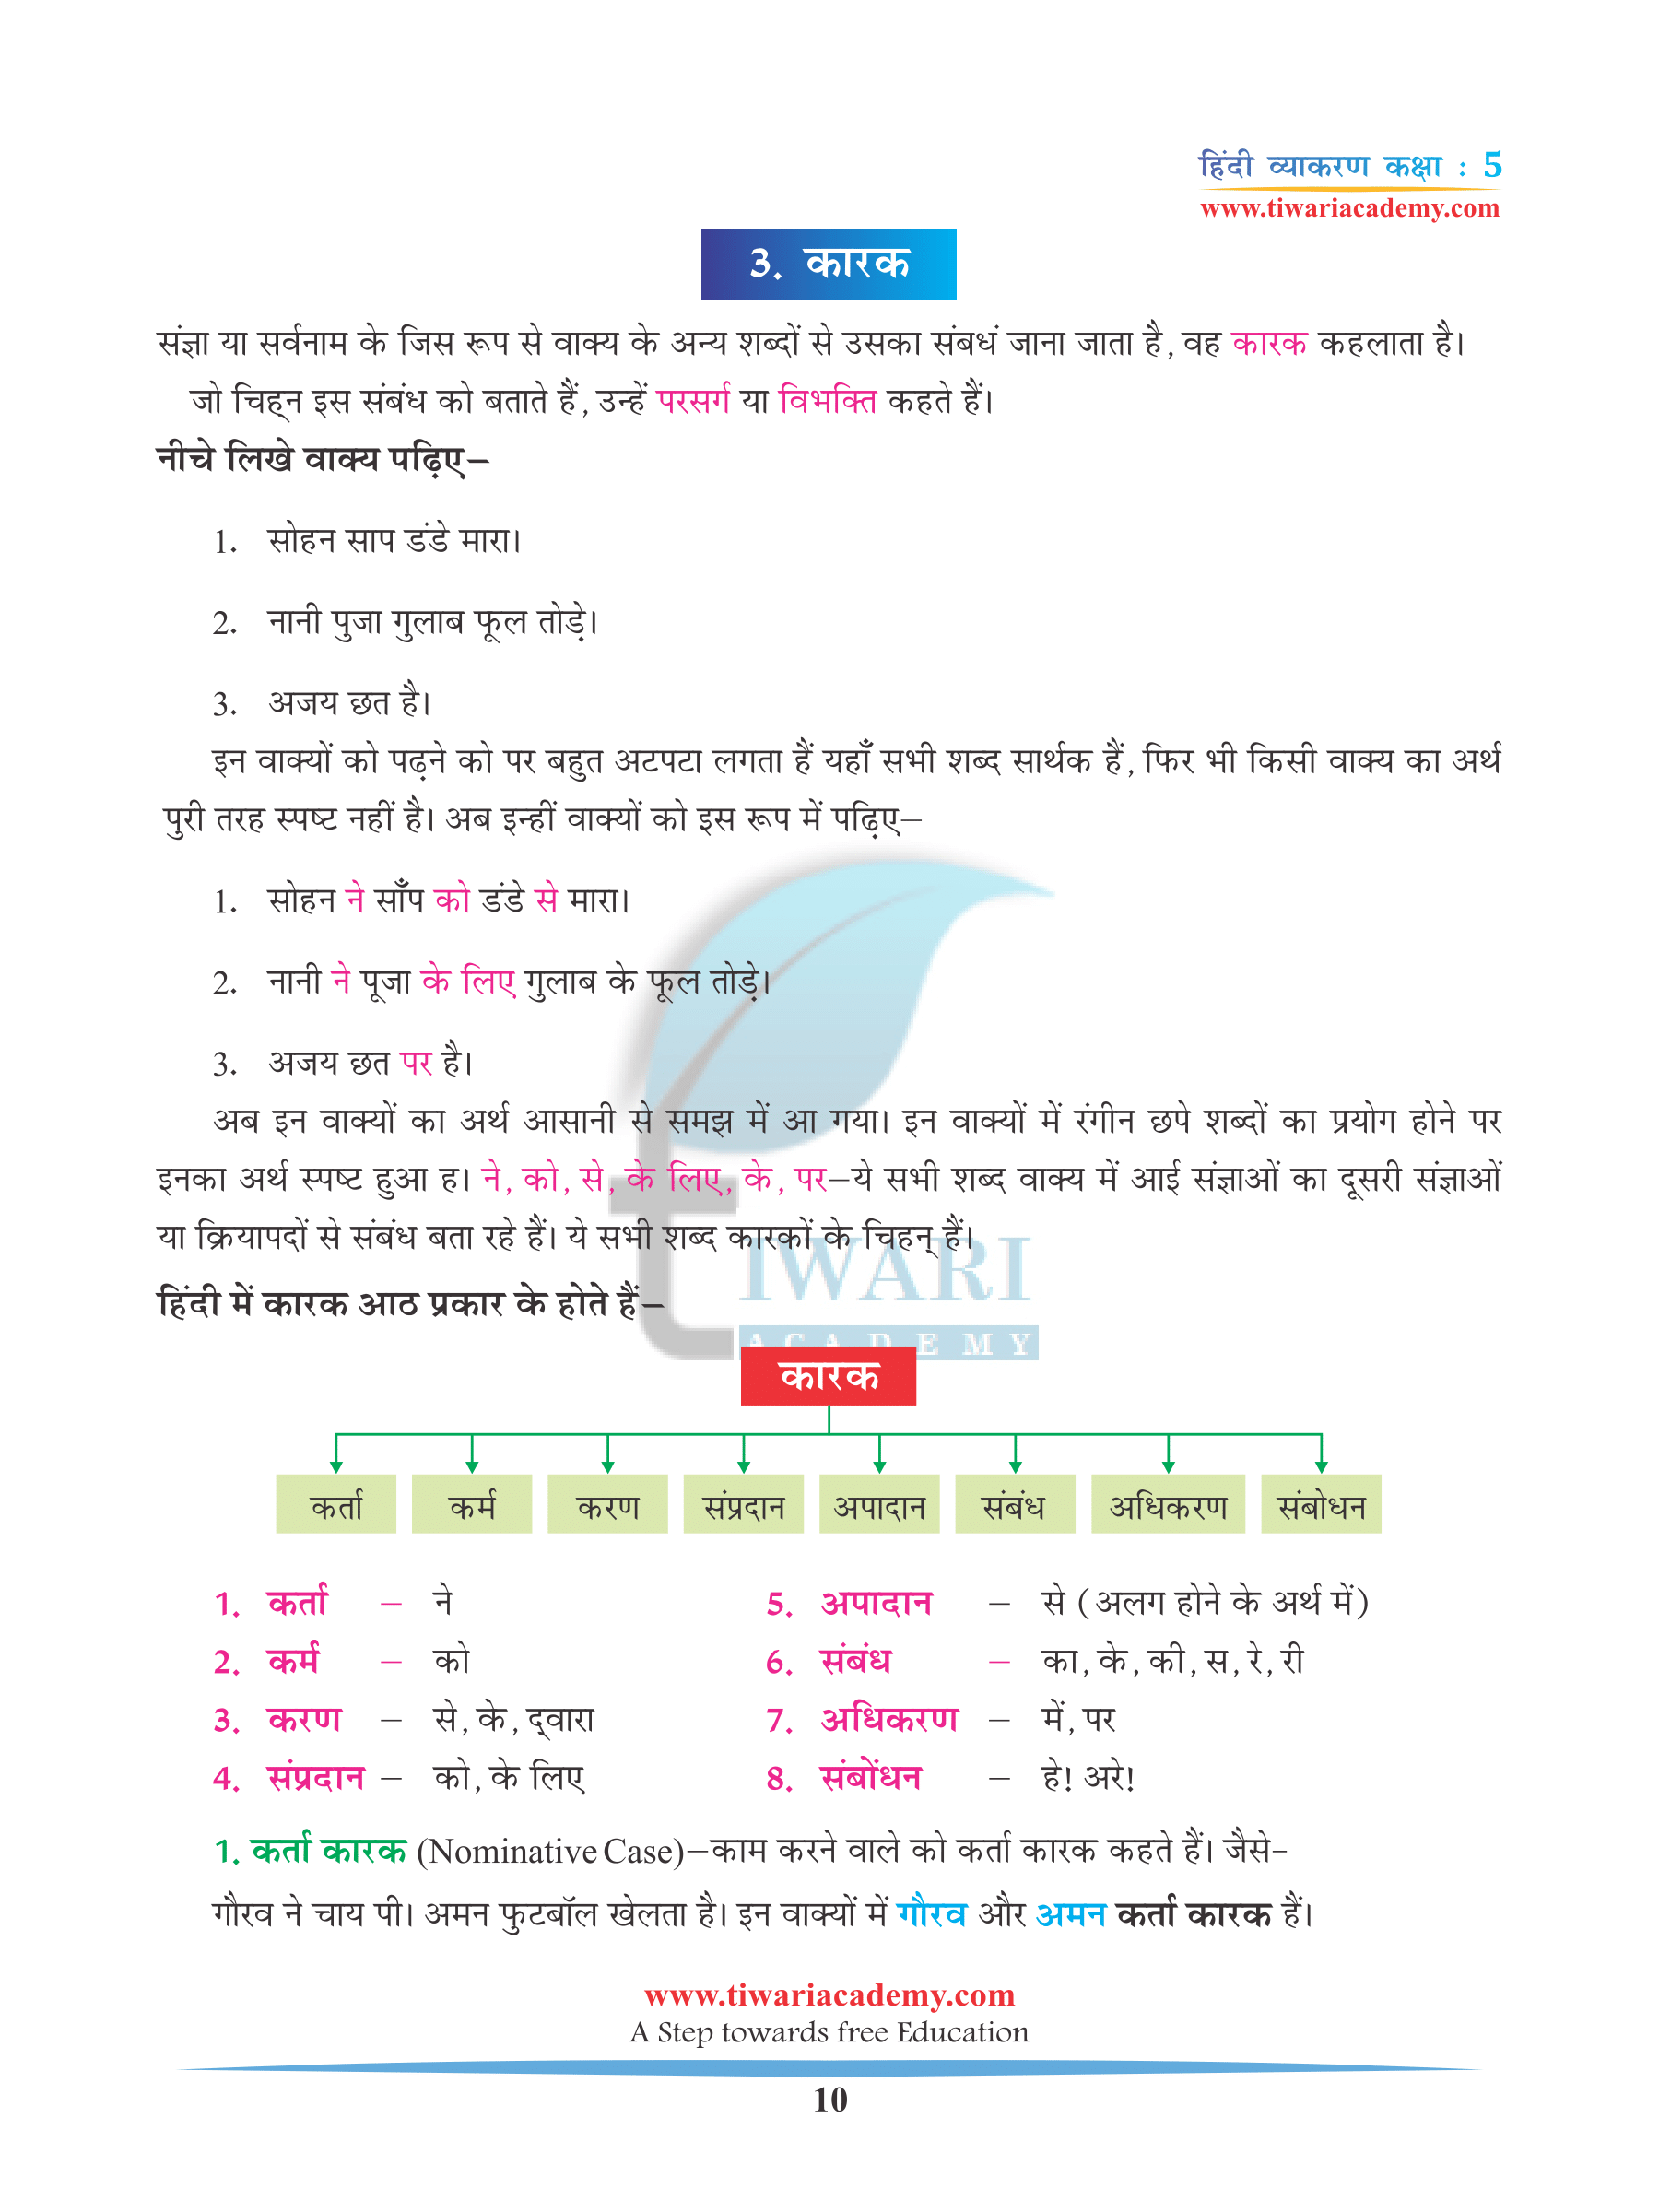 Class 5 Hindi Grammar Chapter 4 Ling, Vachan aur Kaarak for 2023-2024